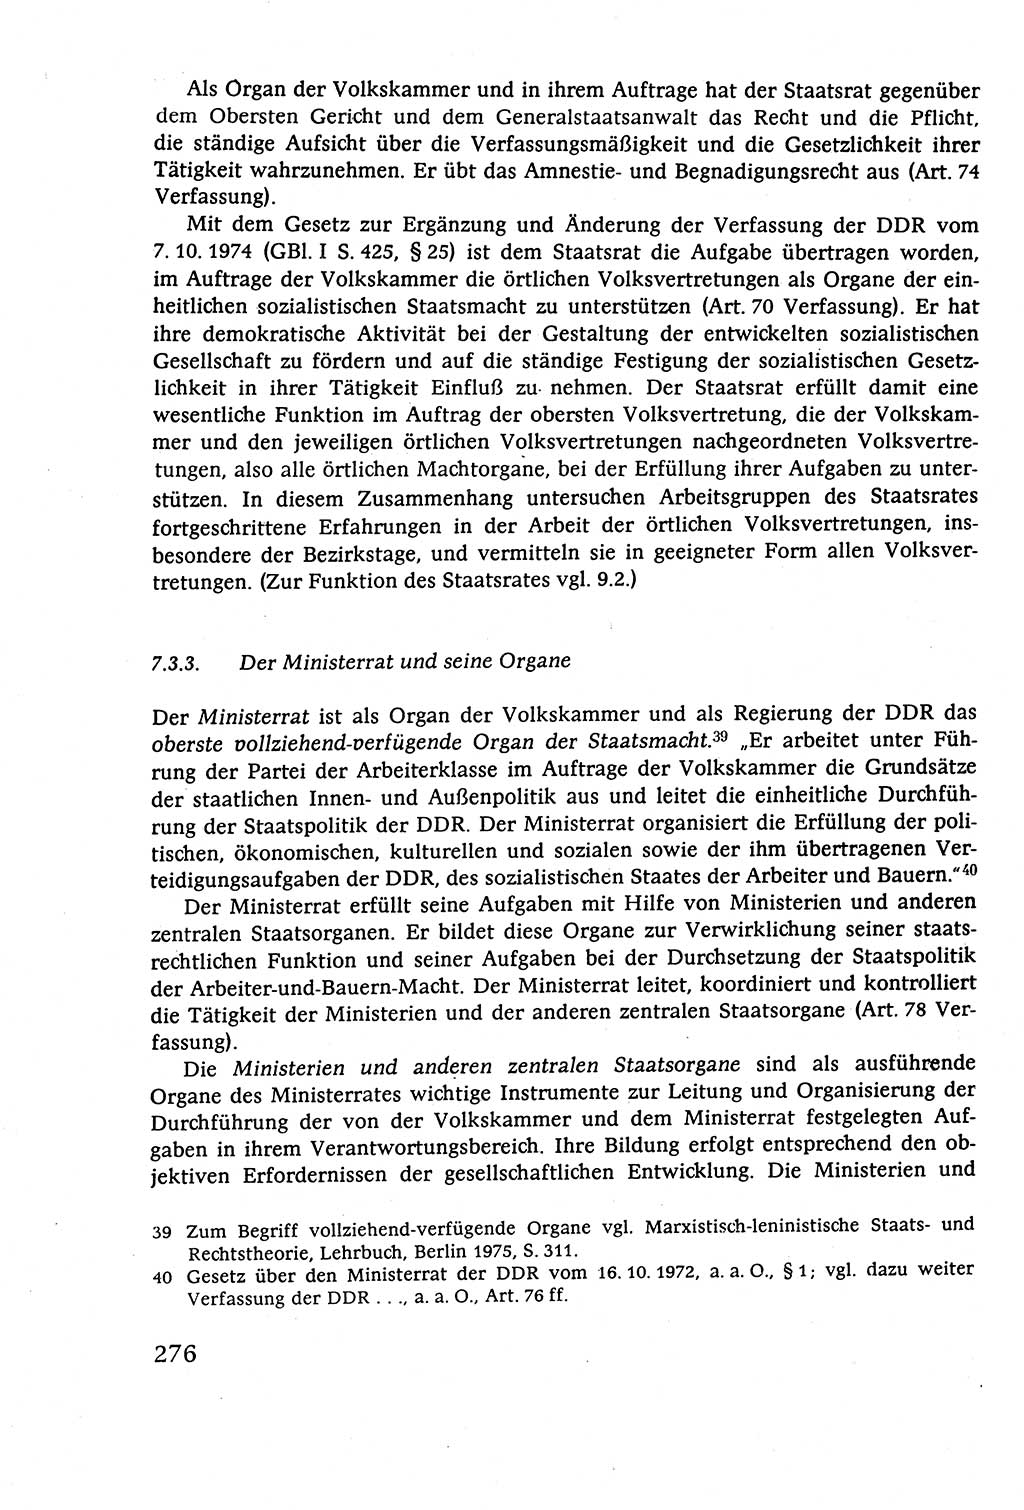 Staatsrecht der DDR (Deutsche Demokratische Republik), Lehrbuch 1977, Seite 276 (St.-R. DDR Lb. 1977, S. 276)